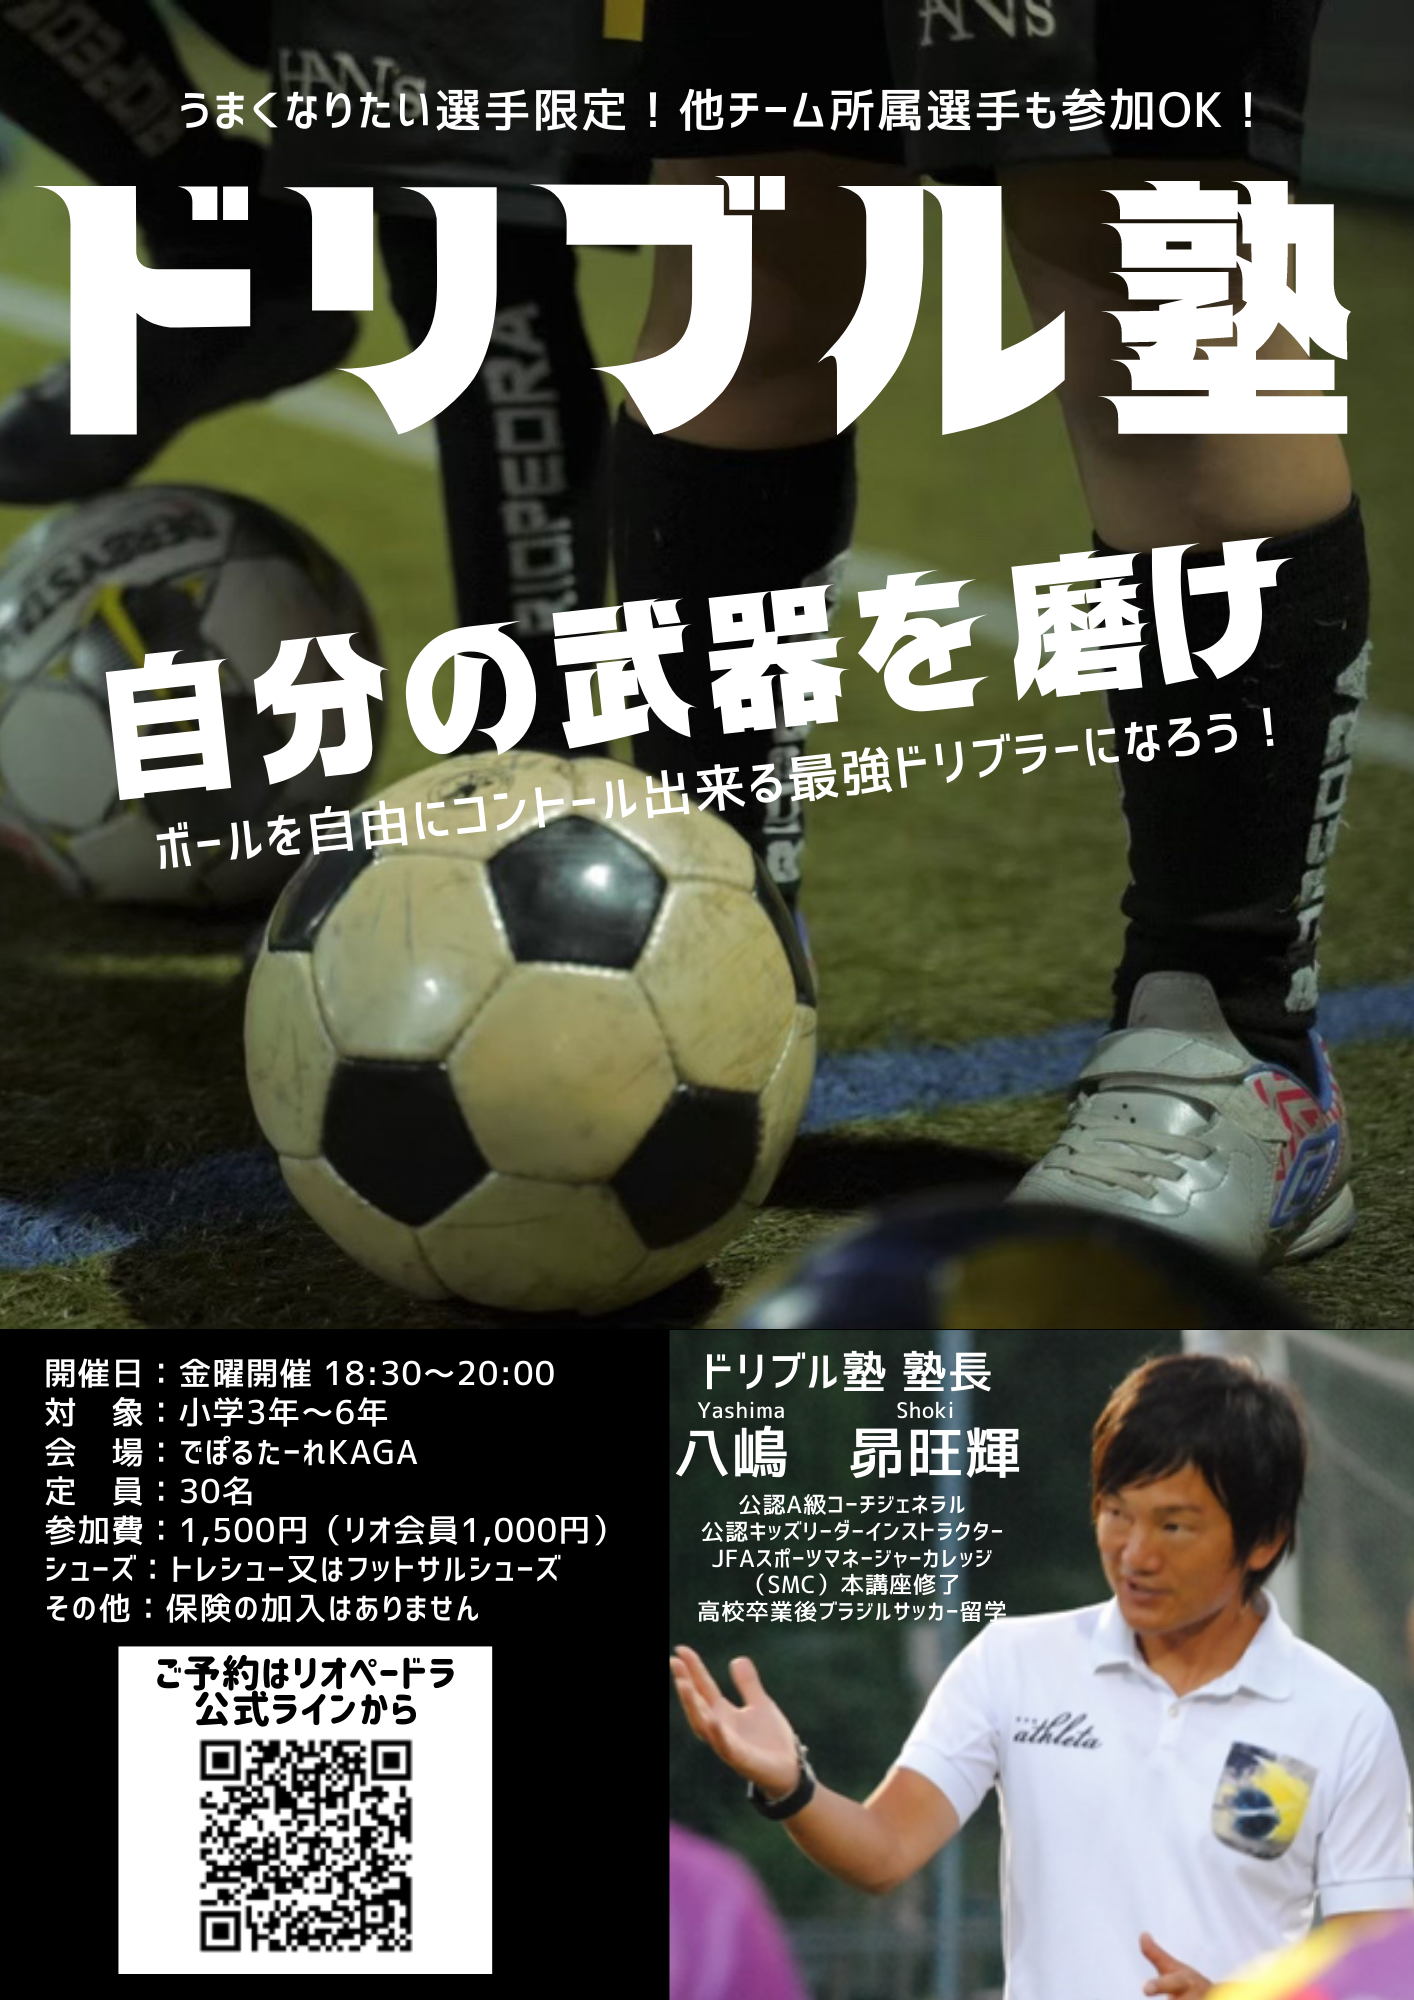 小学3 6年生対象 ドリブル塾 10月の日程 石川県のサッカー 体育 体操 ならスポーツクラブリオペードラ加賀